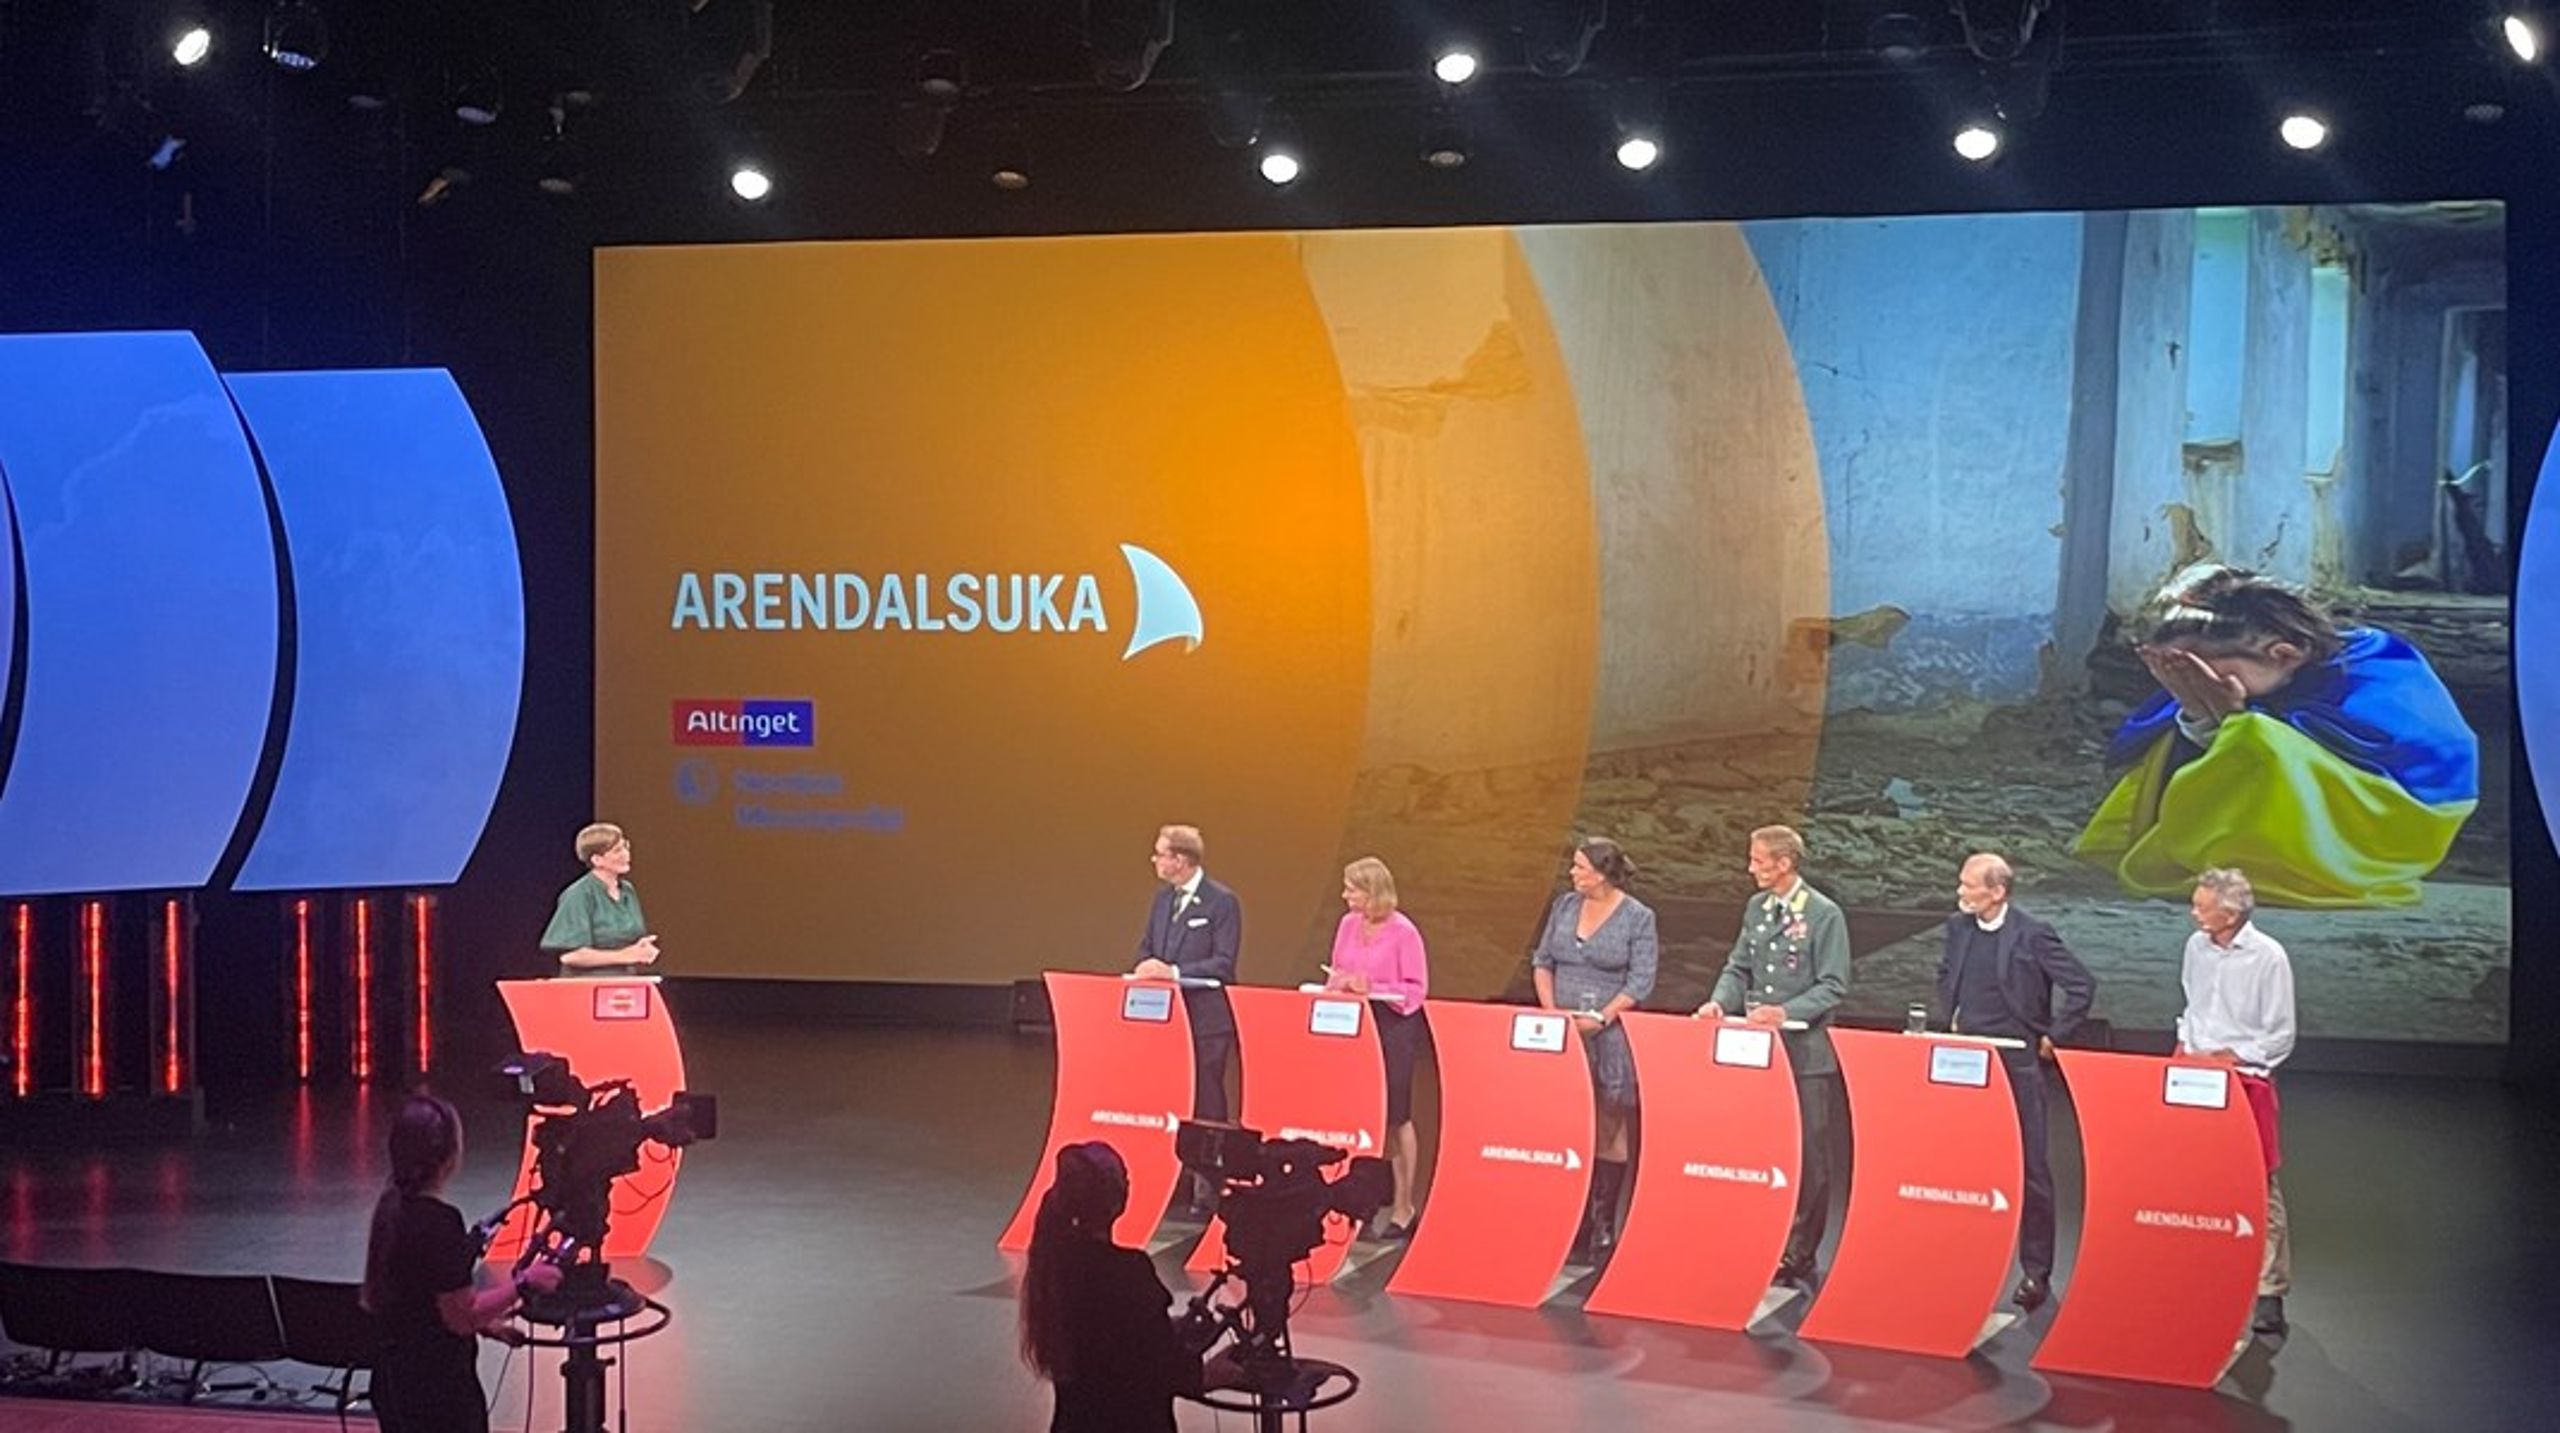 Det norske folkemøde i Arendal åbnede med sikkerhedspolitisk debat - i panelet står den svenske og den norske udenrigsminister længst til venstre